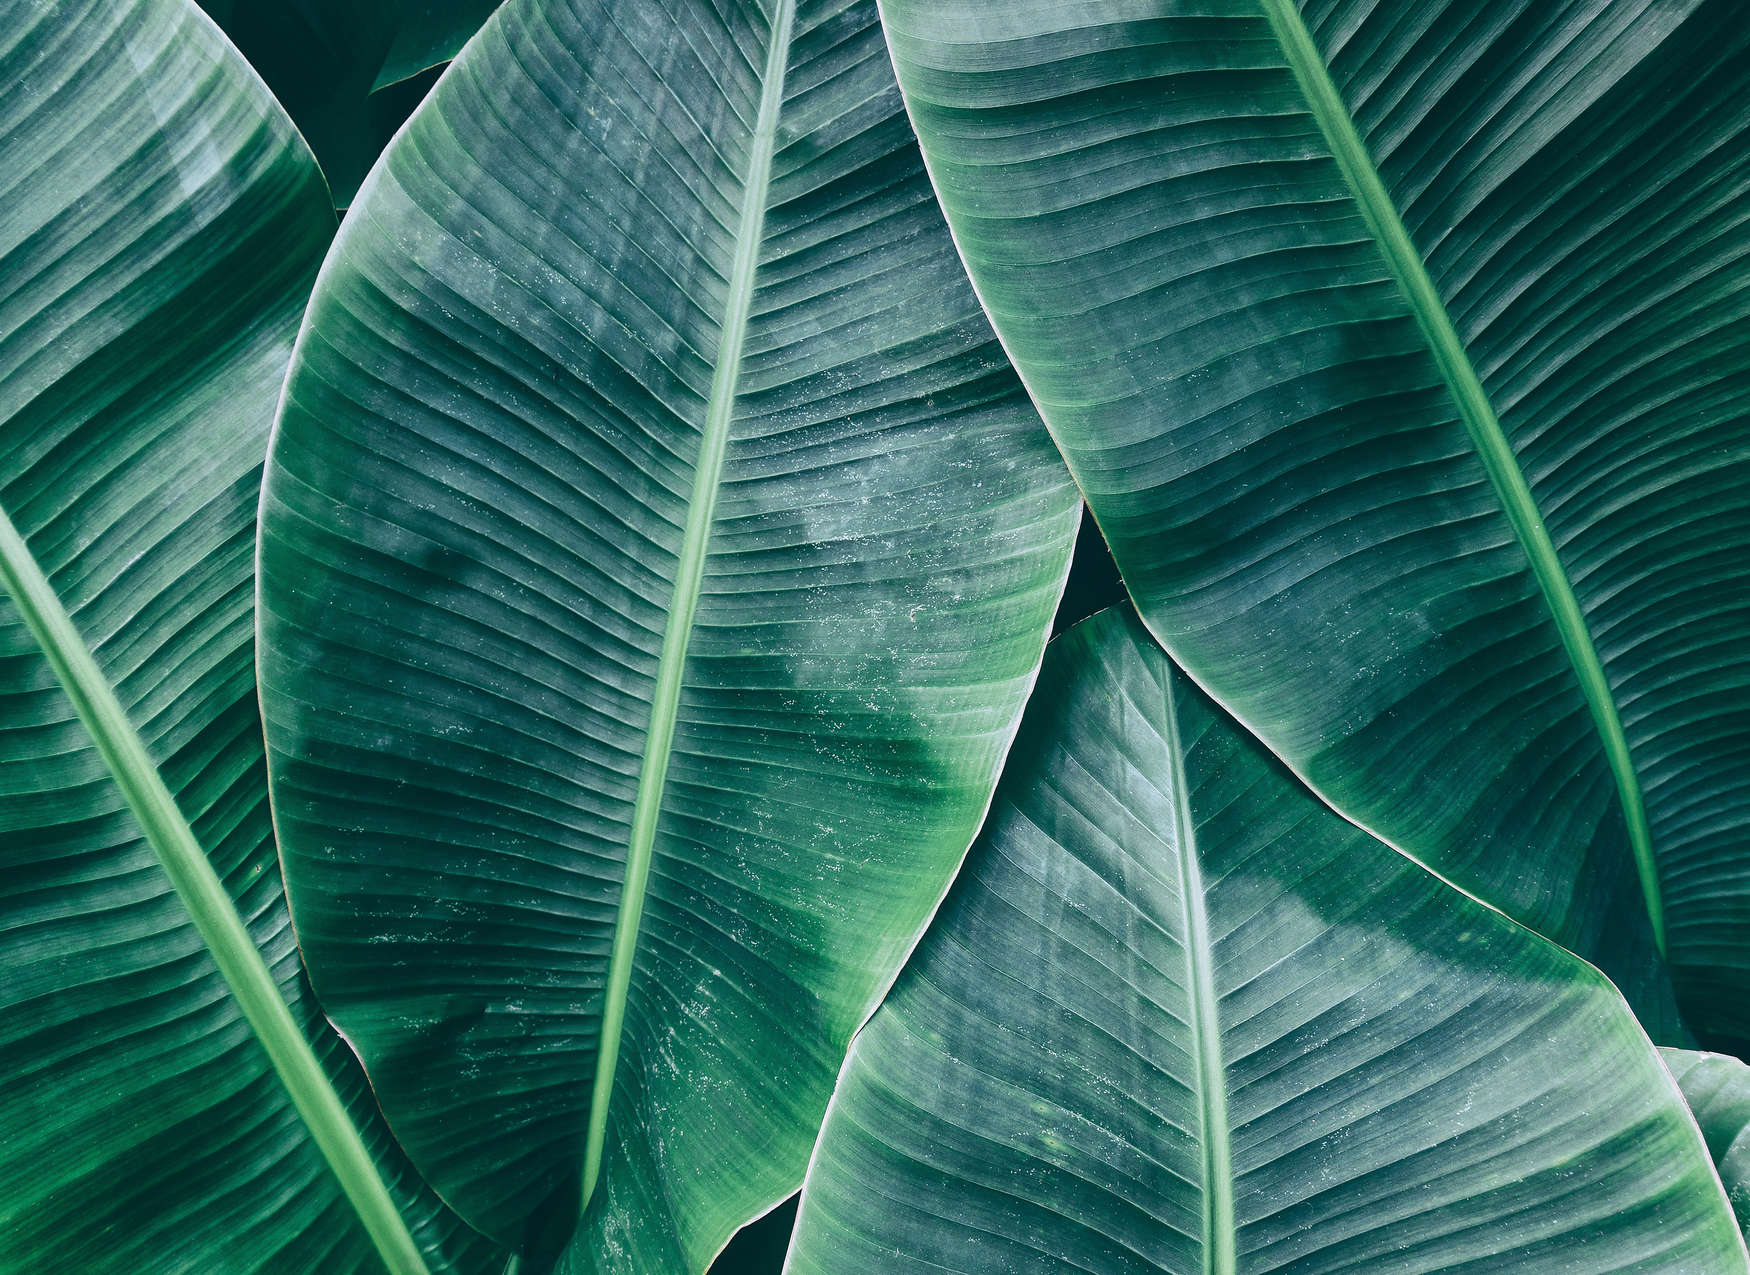             Jungle feeling with banana leaf mural - Green
        